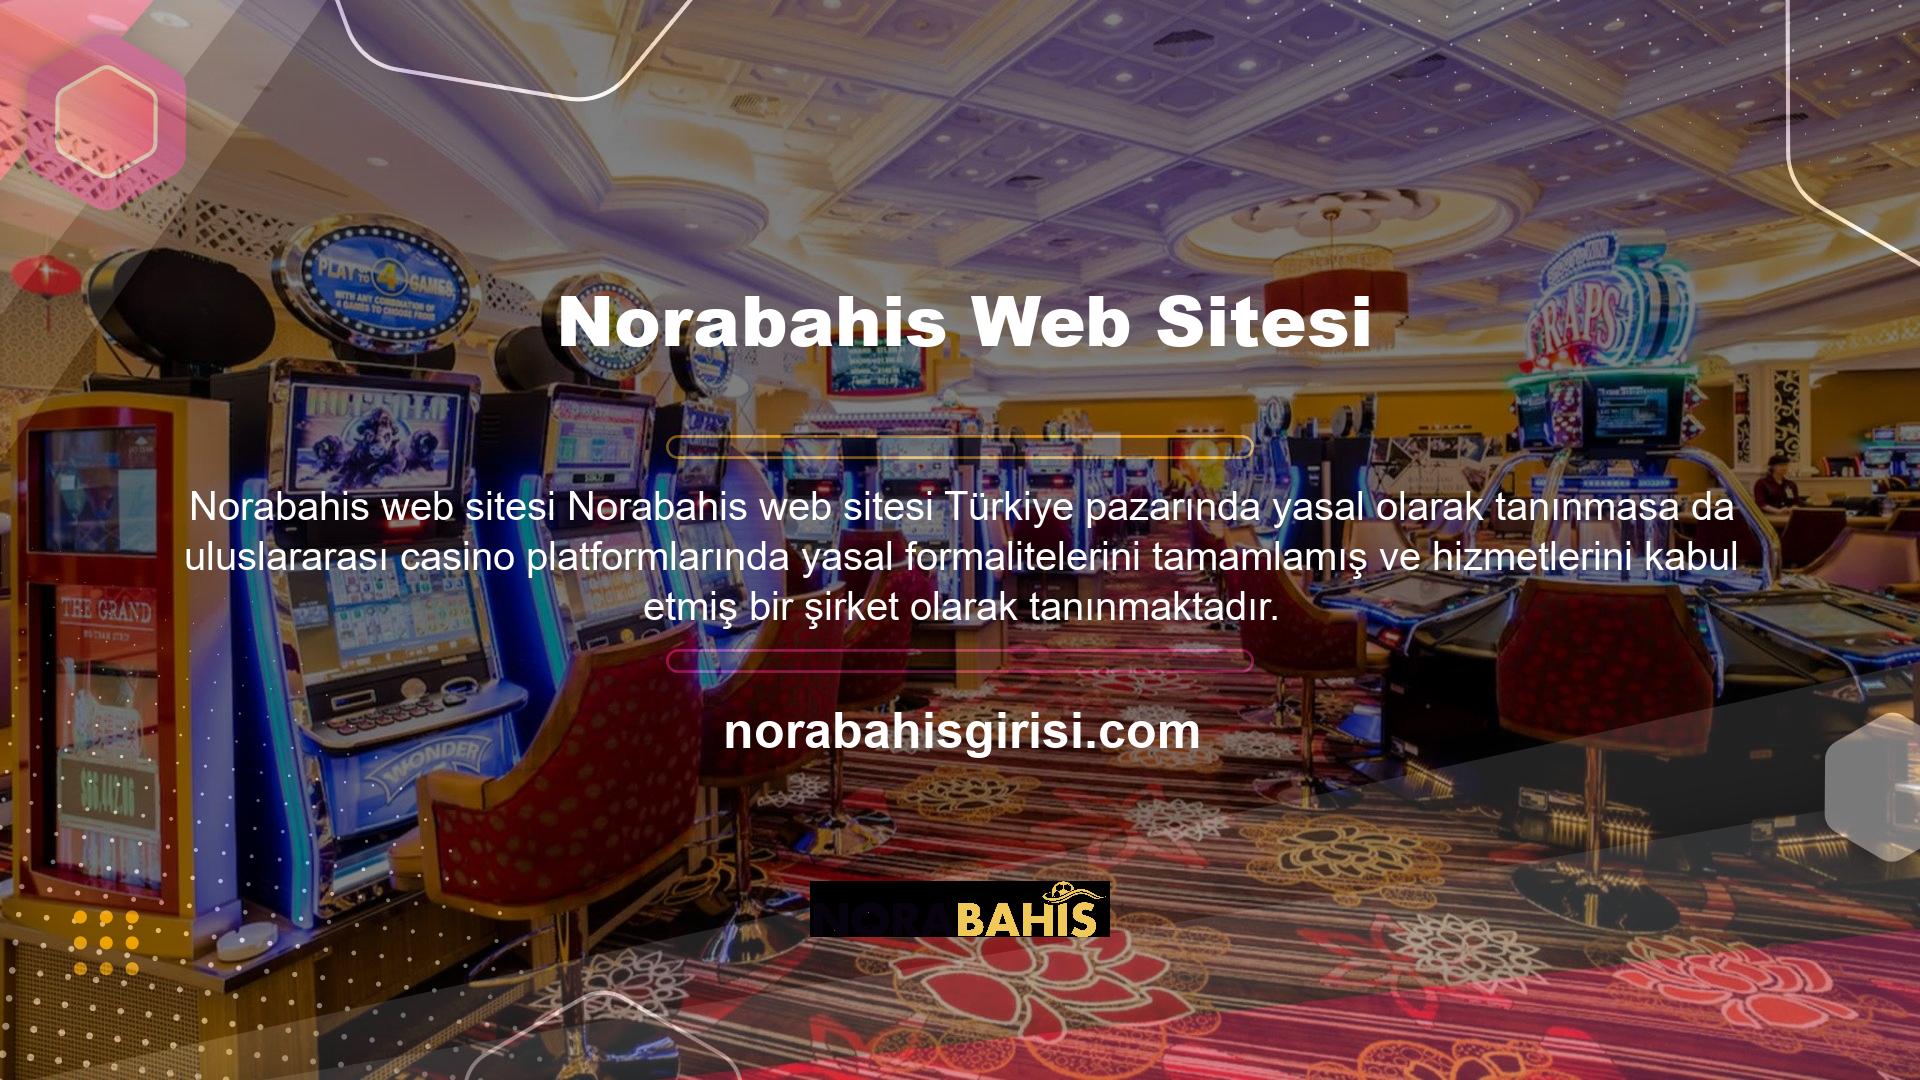 Yani Norabahis sitesi Türk ve yerel bahis siteleriyle aynı süreci izlemektedir